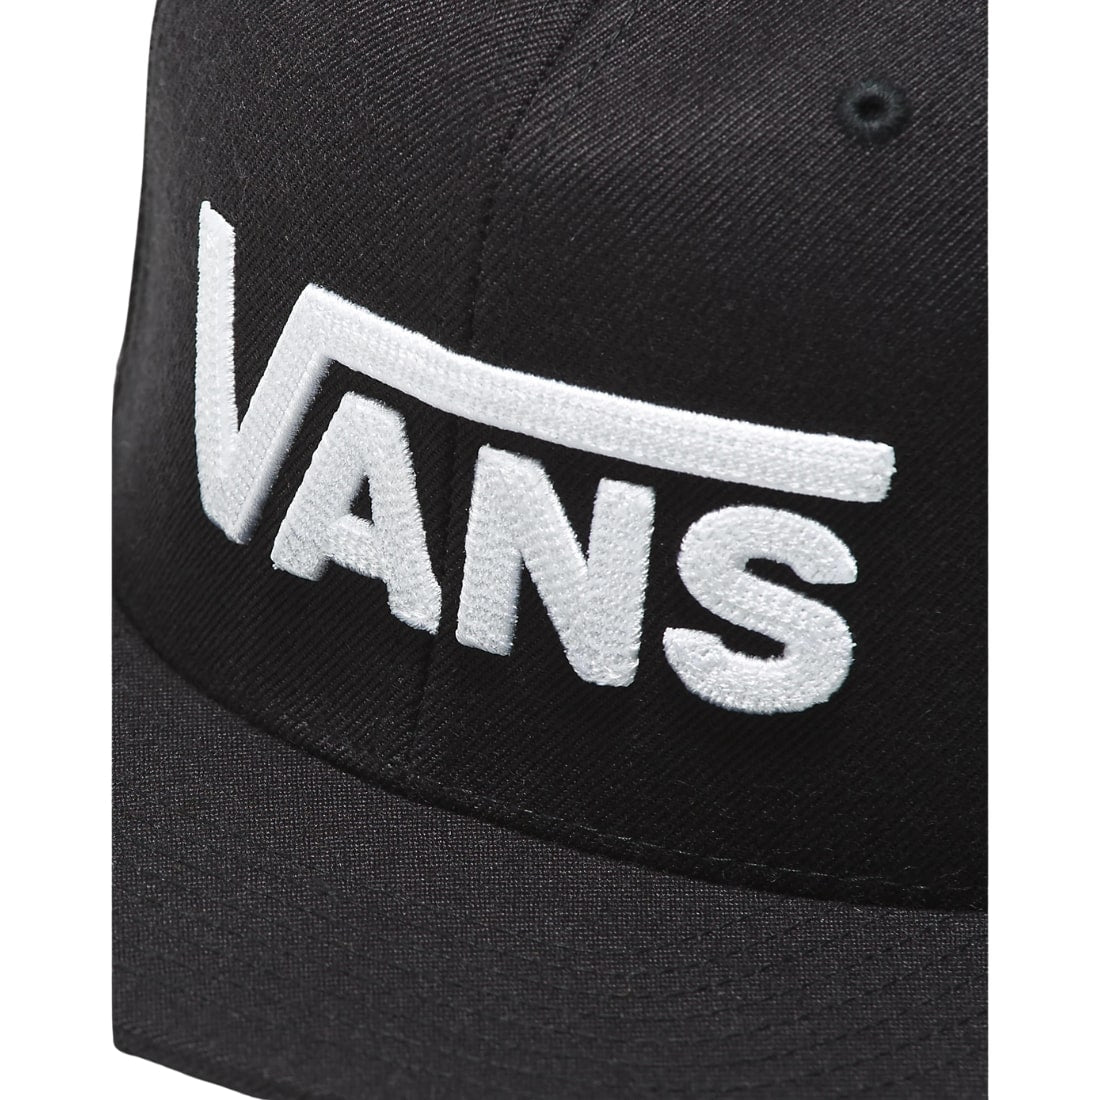 Vans Drop V II Snapback Hat Cap - Black/White - Snapback Cap by Vans One Size